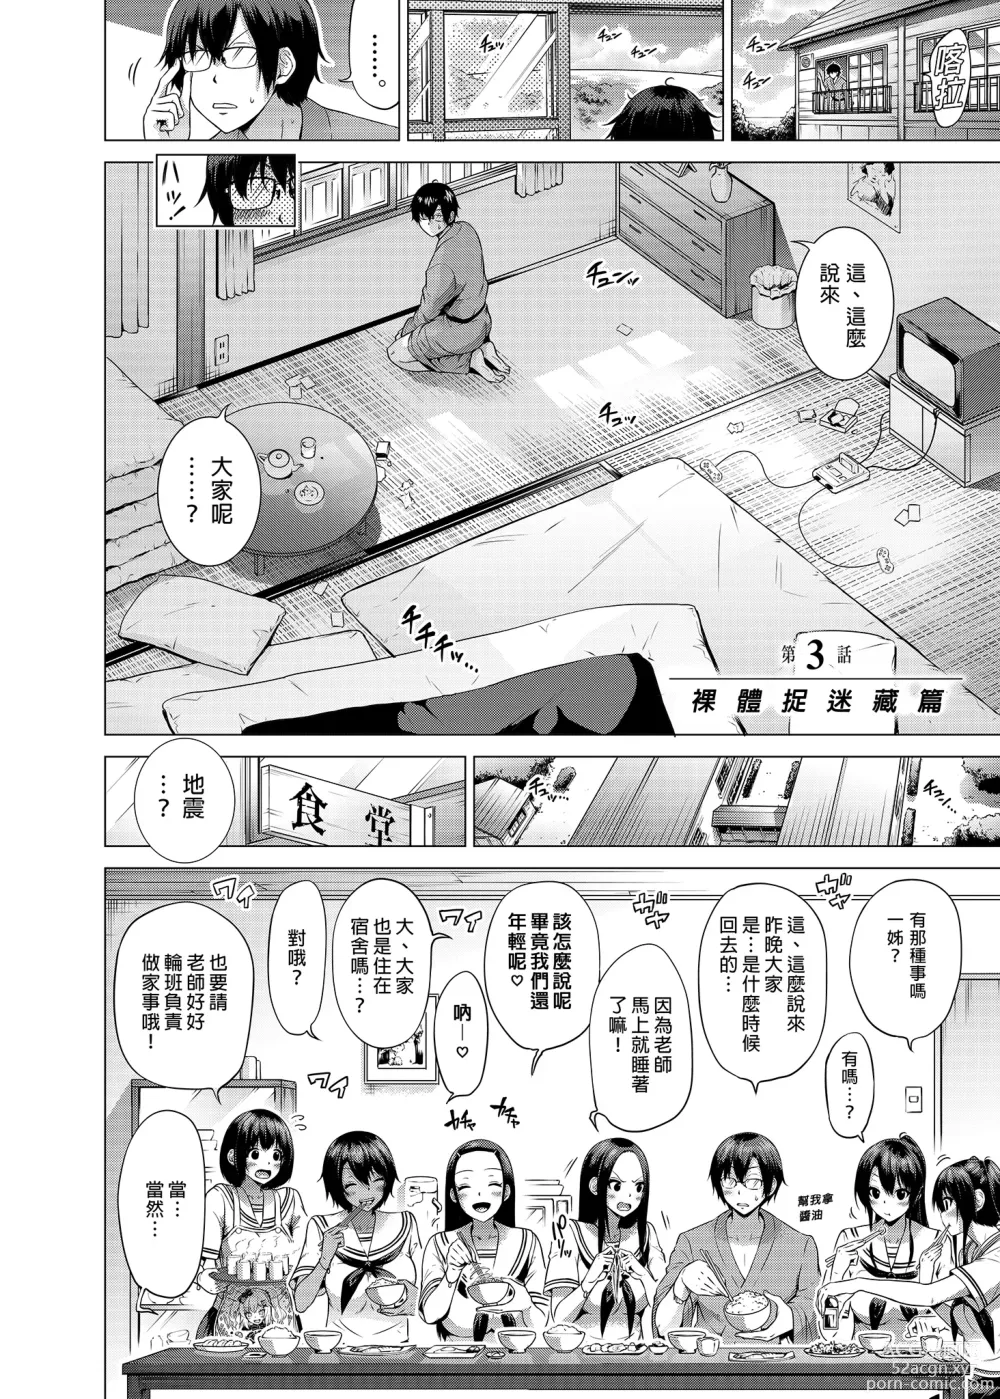 Page 8 of manga nanaka no rakuen3